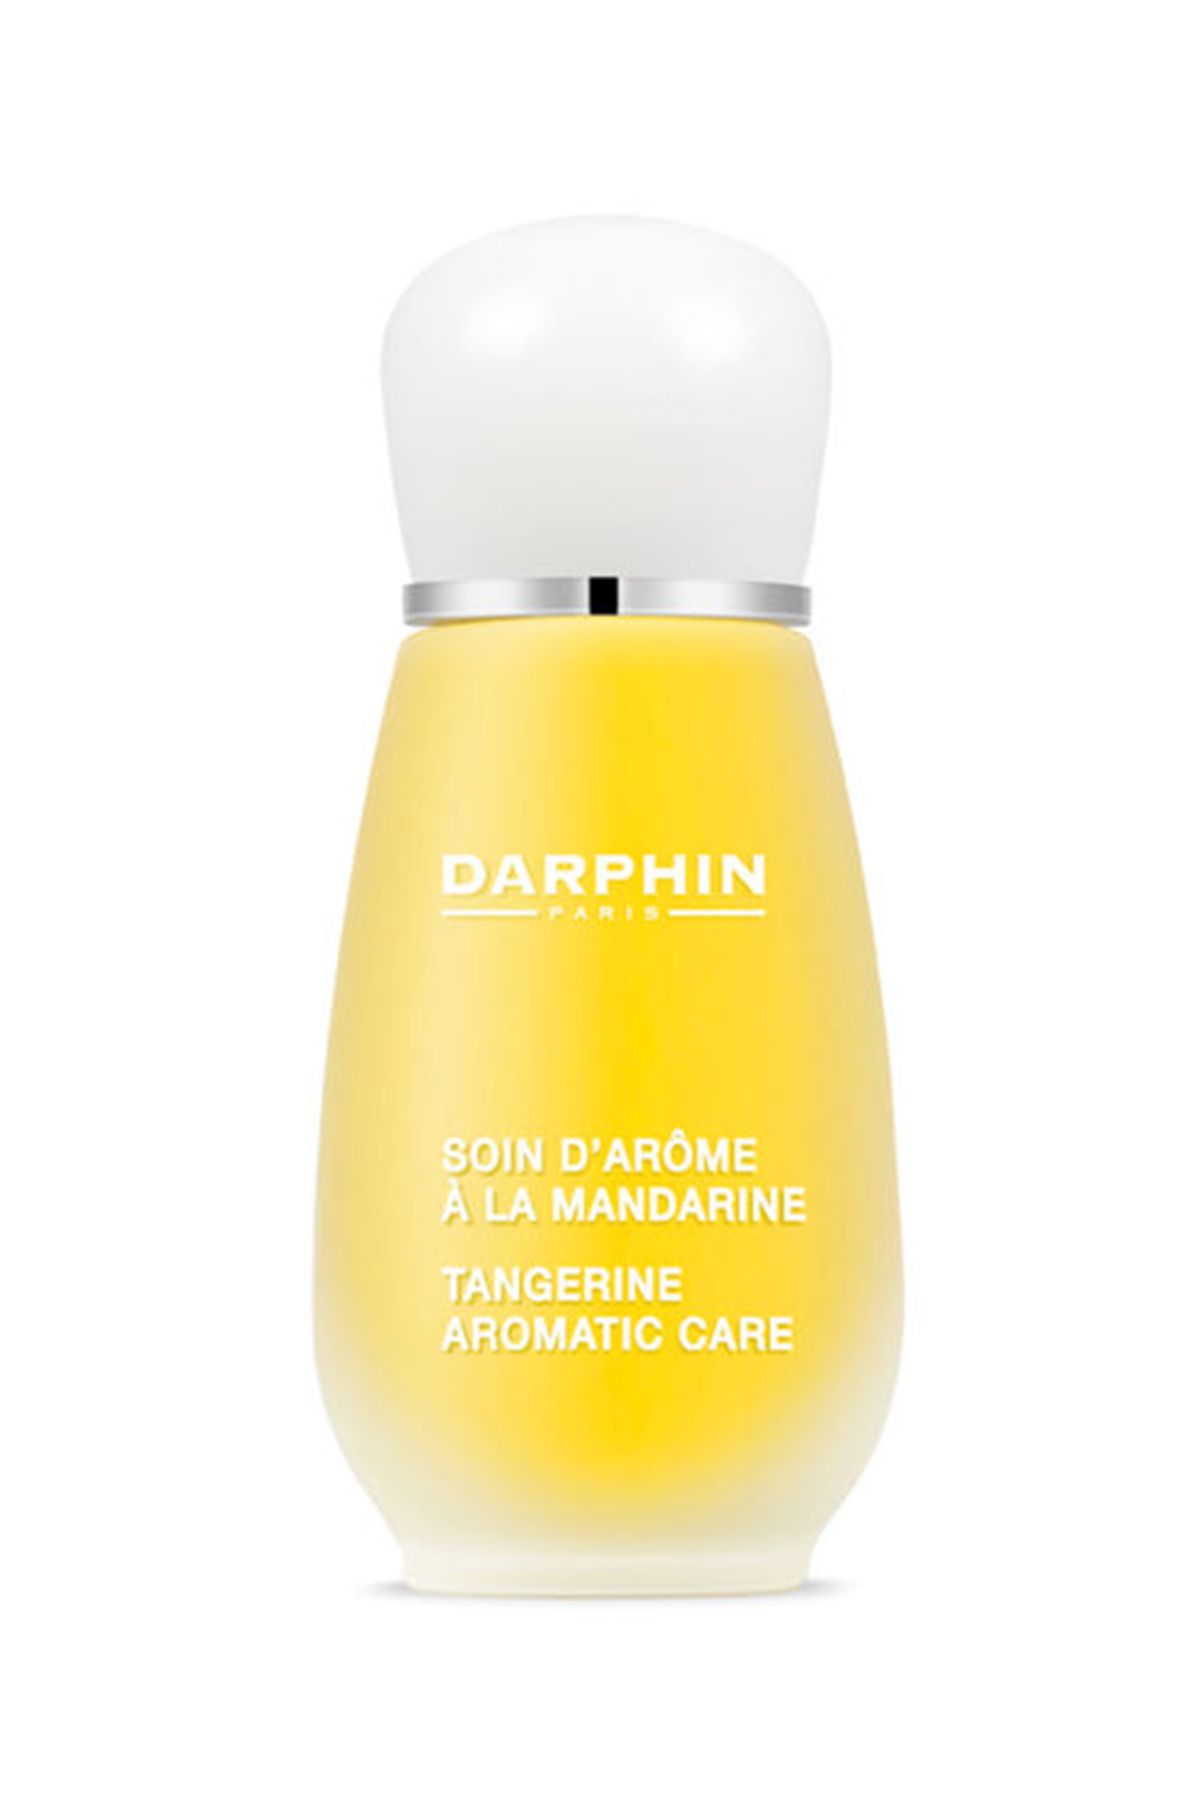 Darphin Aromatik Bakım Losyonu - Tangerine Aromatic Care 15 ml 882381042042